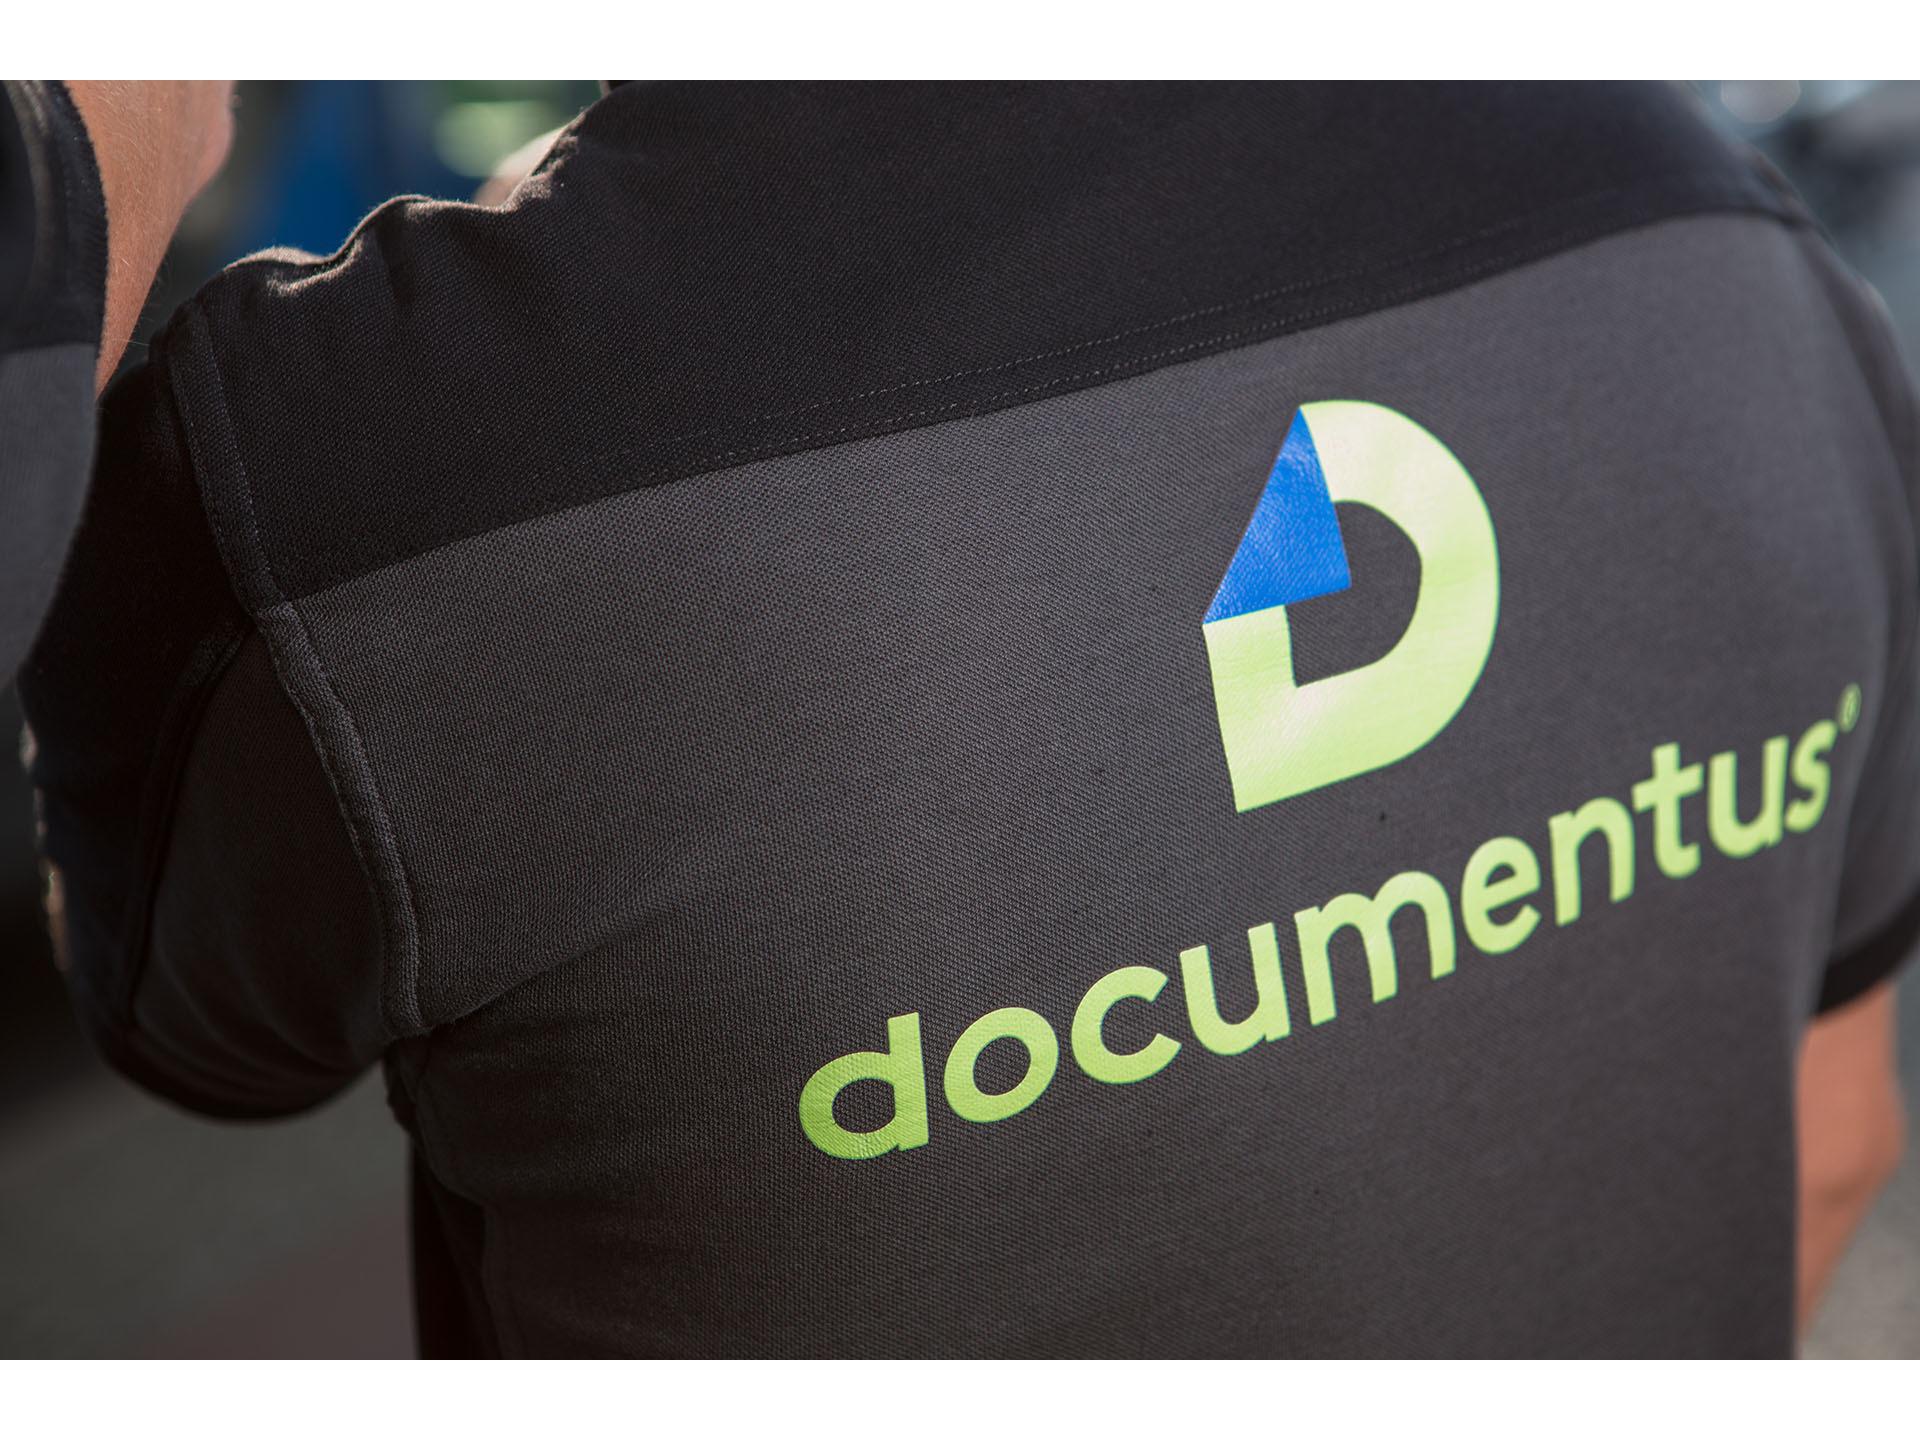 Bilder documentus Dortmund GmbH